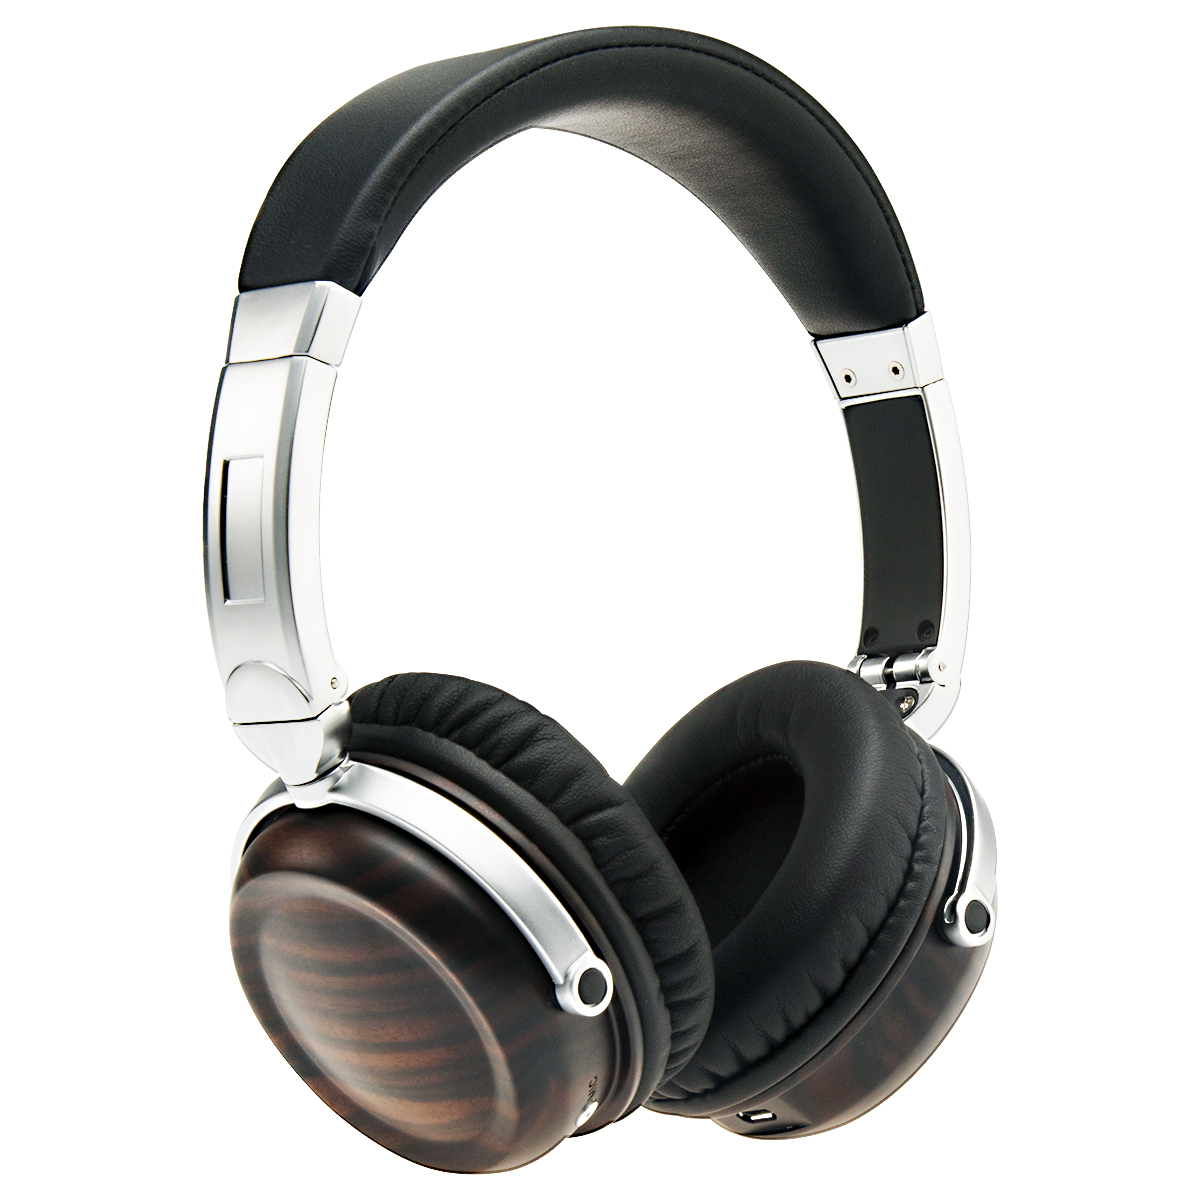 Fones de ouvido de madeira com qualidade Bluetooth HEP-0143